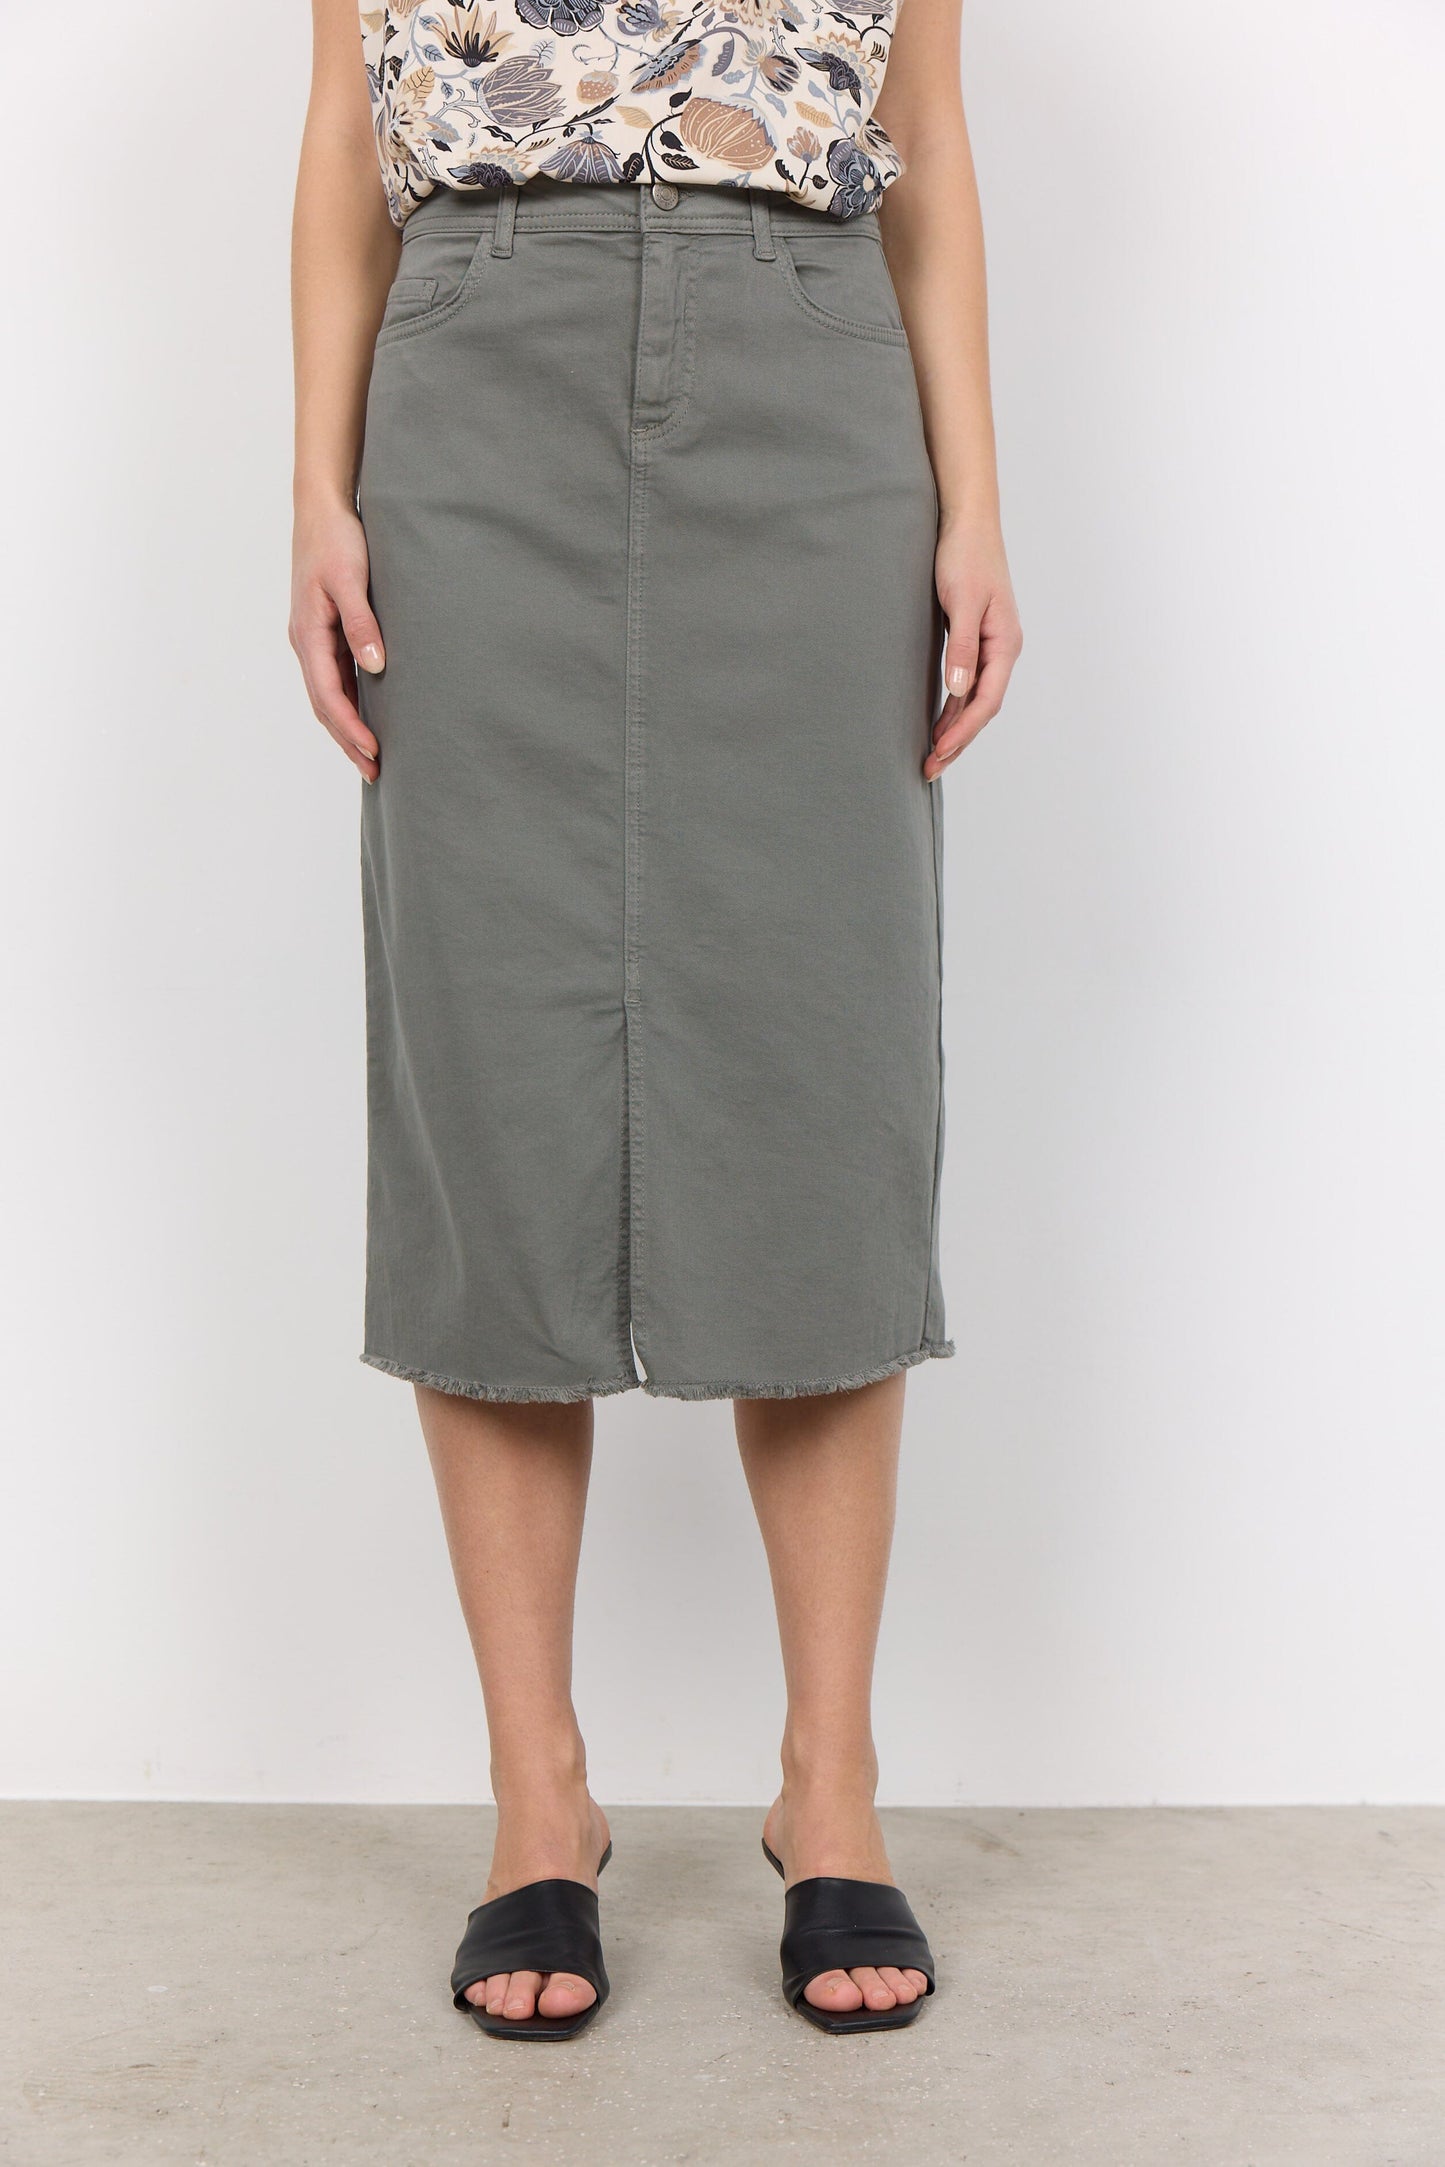 Erna Skirt in Misty Skirt Soyaconcept 